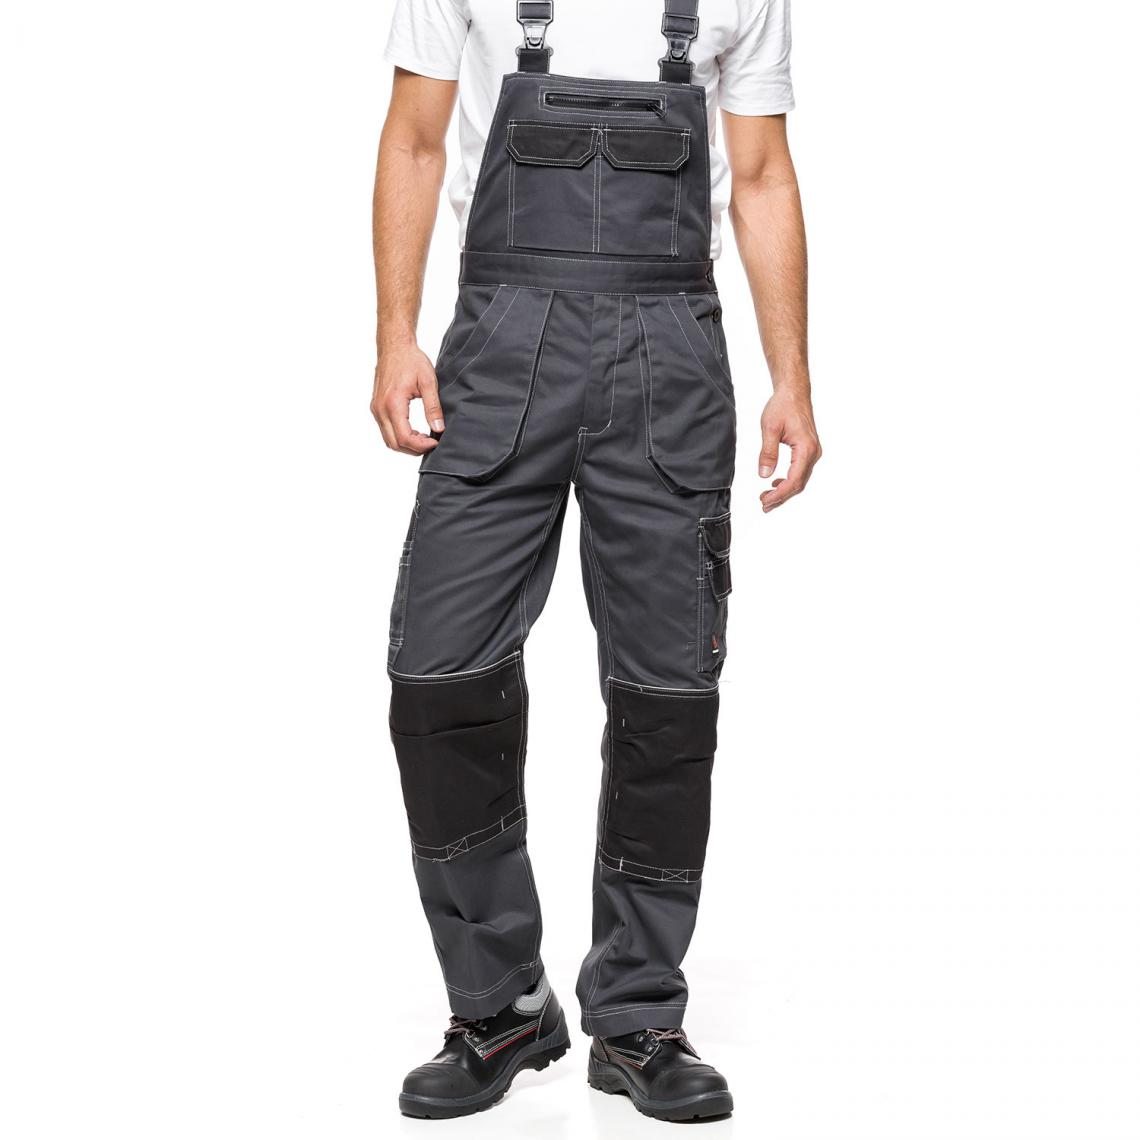 Sans Marque - Salopette de travail pantalon HELIOS Gris et noir Taille 58 (108-113) - Protections corps